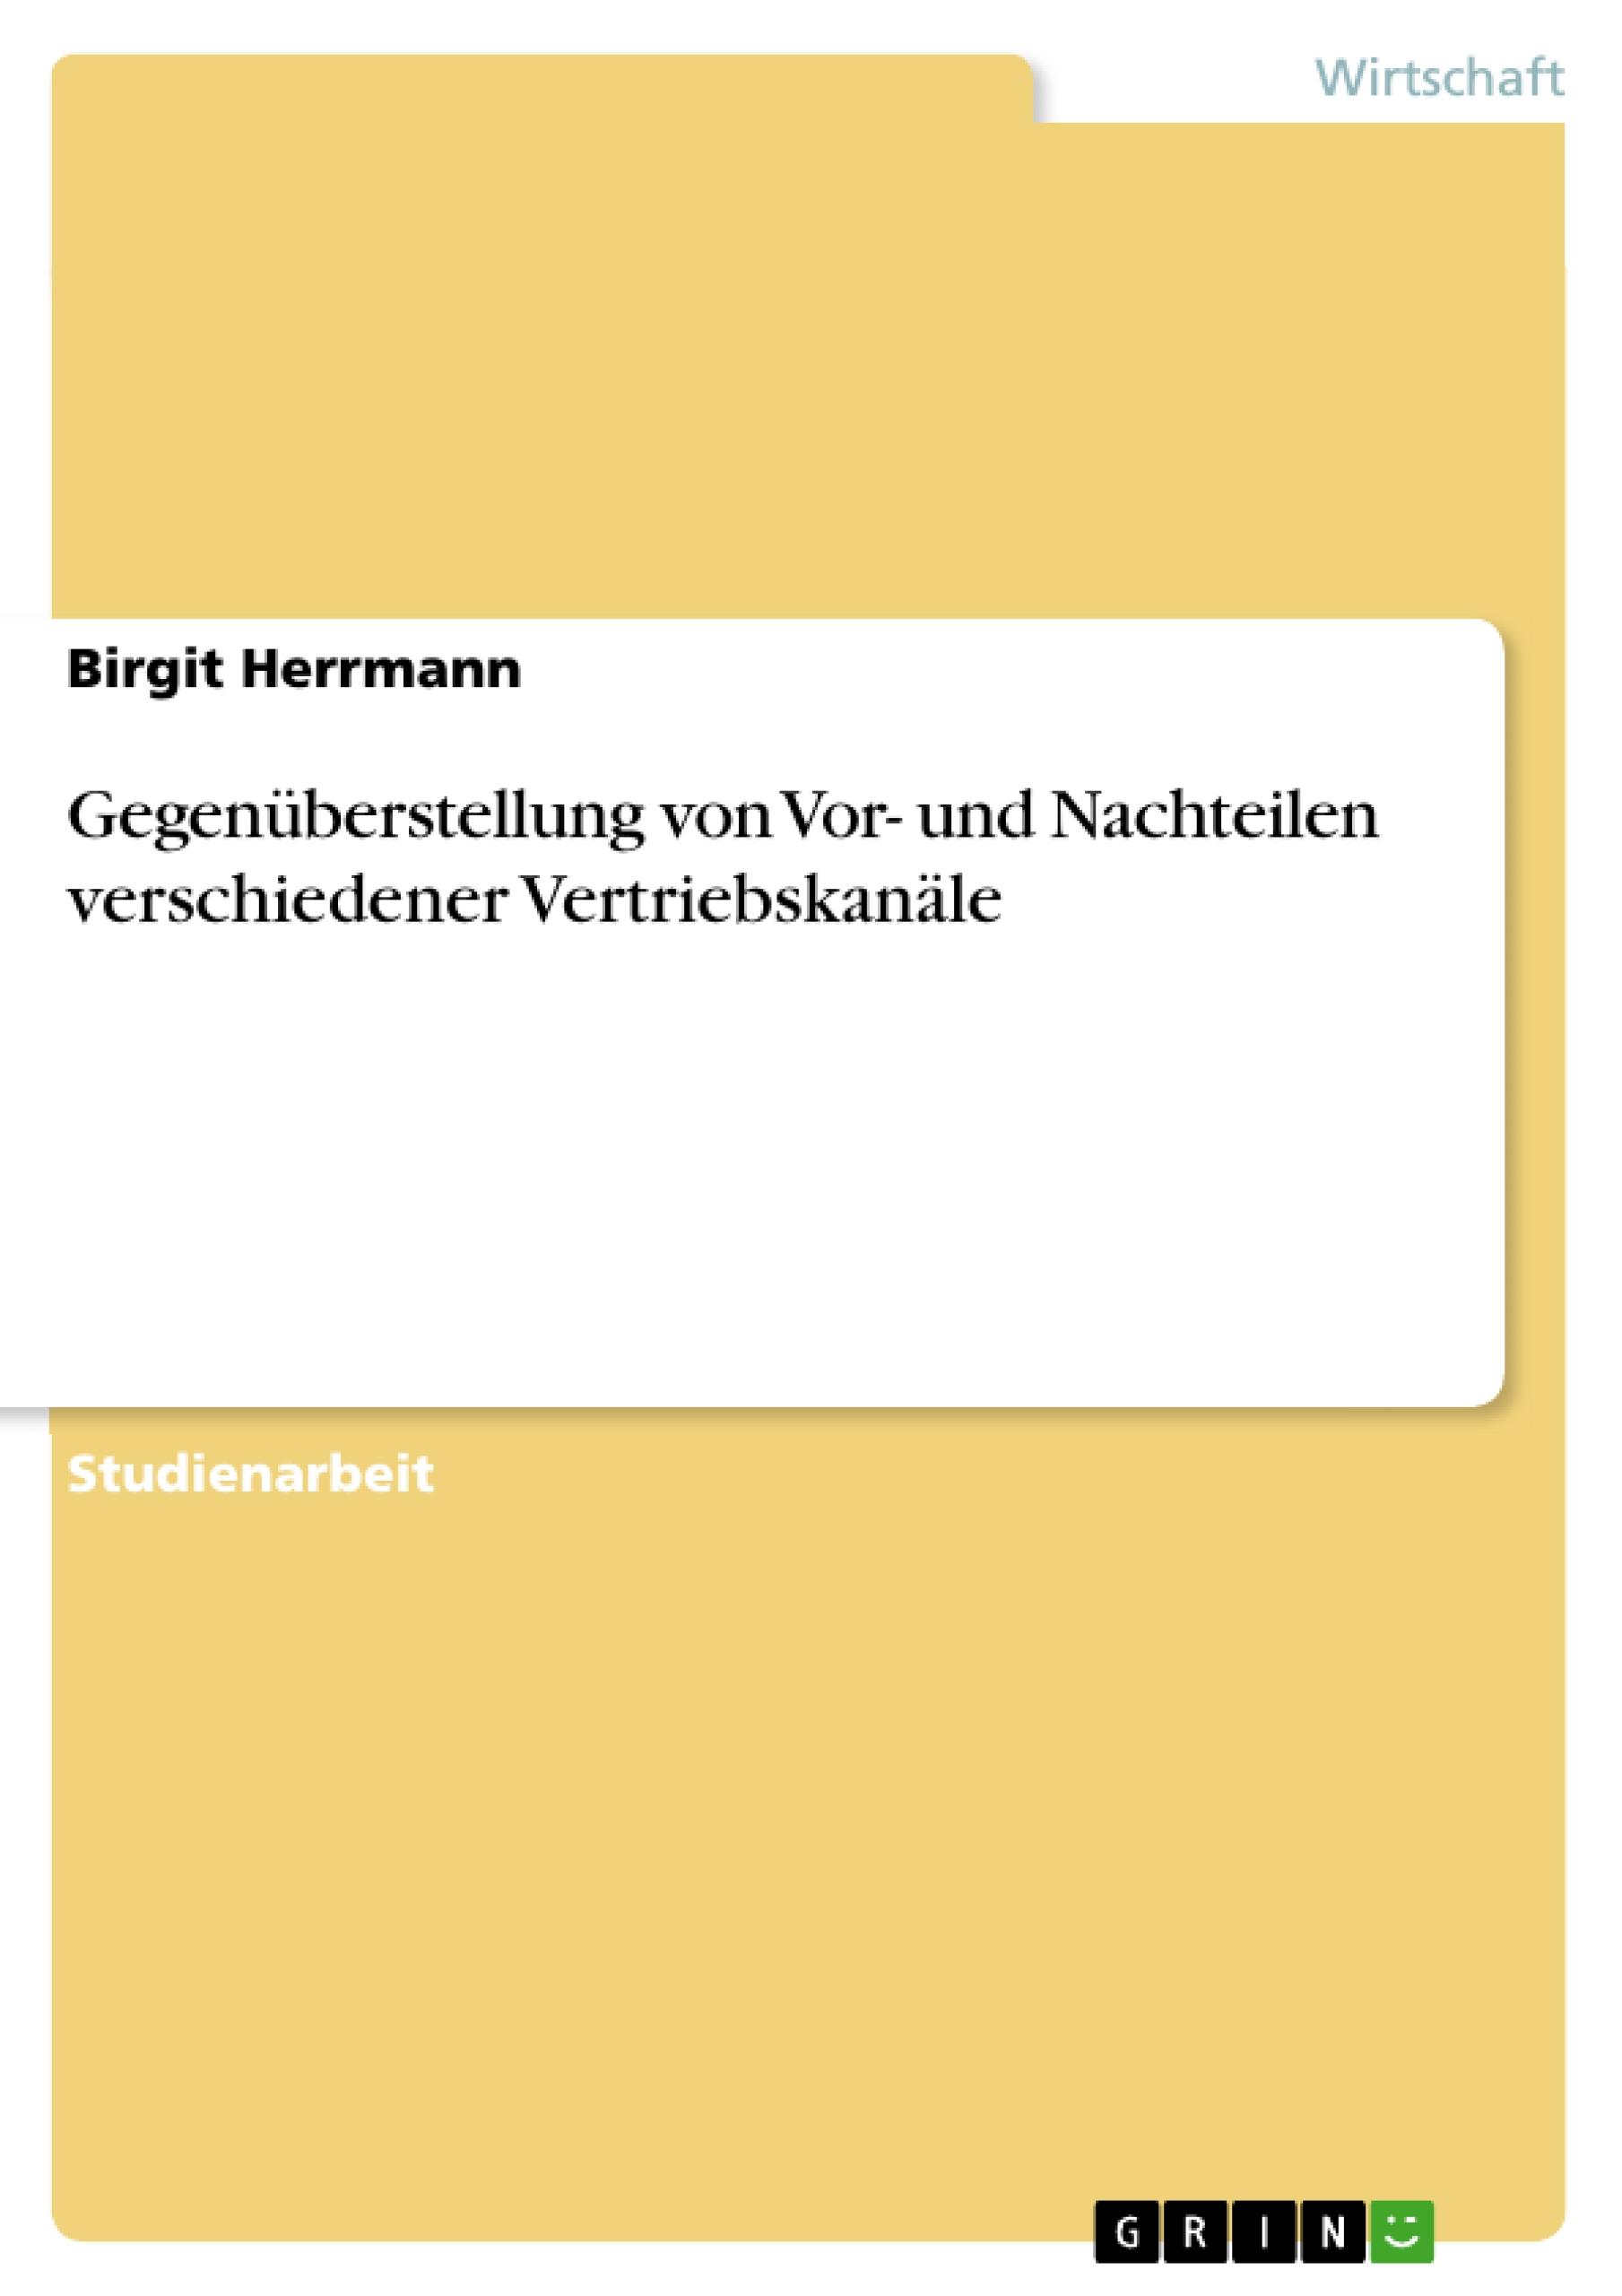 GegenÃƒÂ¼berstellung von Vor- und Nachteilen verschiedener VertriebskanÃƒÂ¤le - Herrmann, Birgit